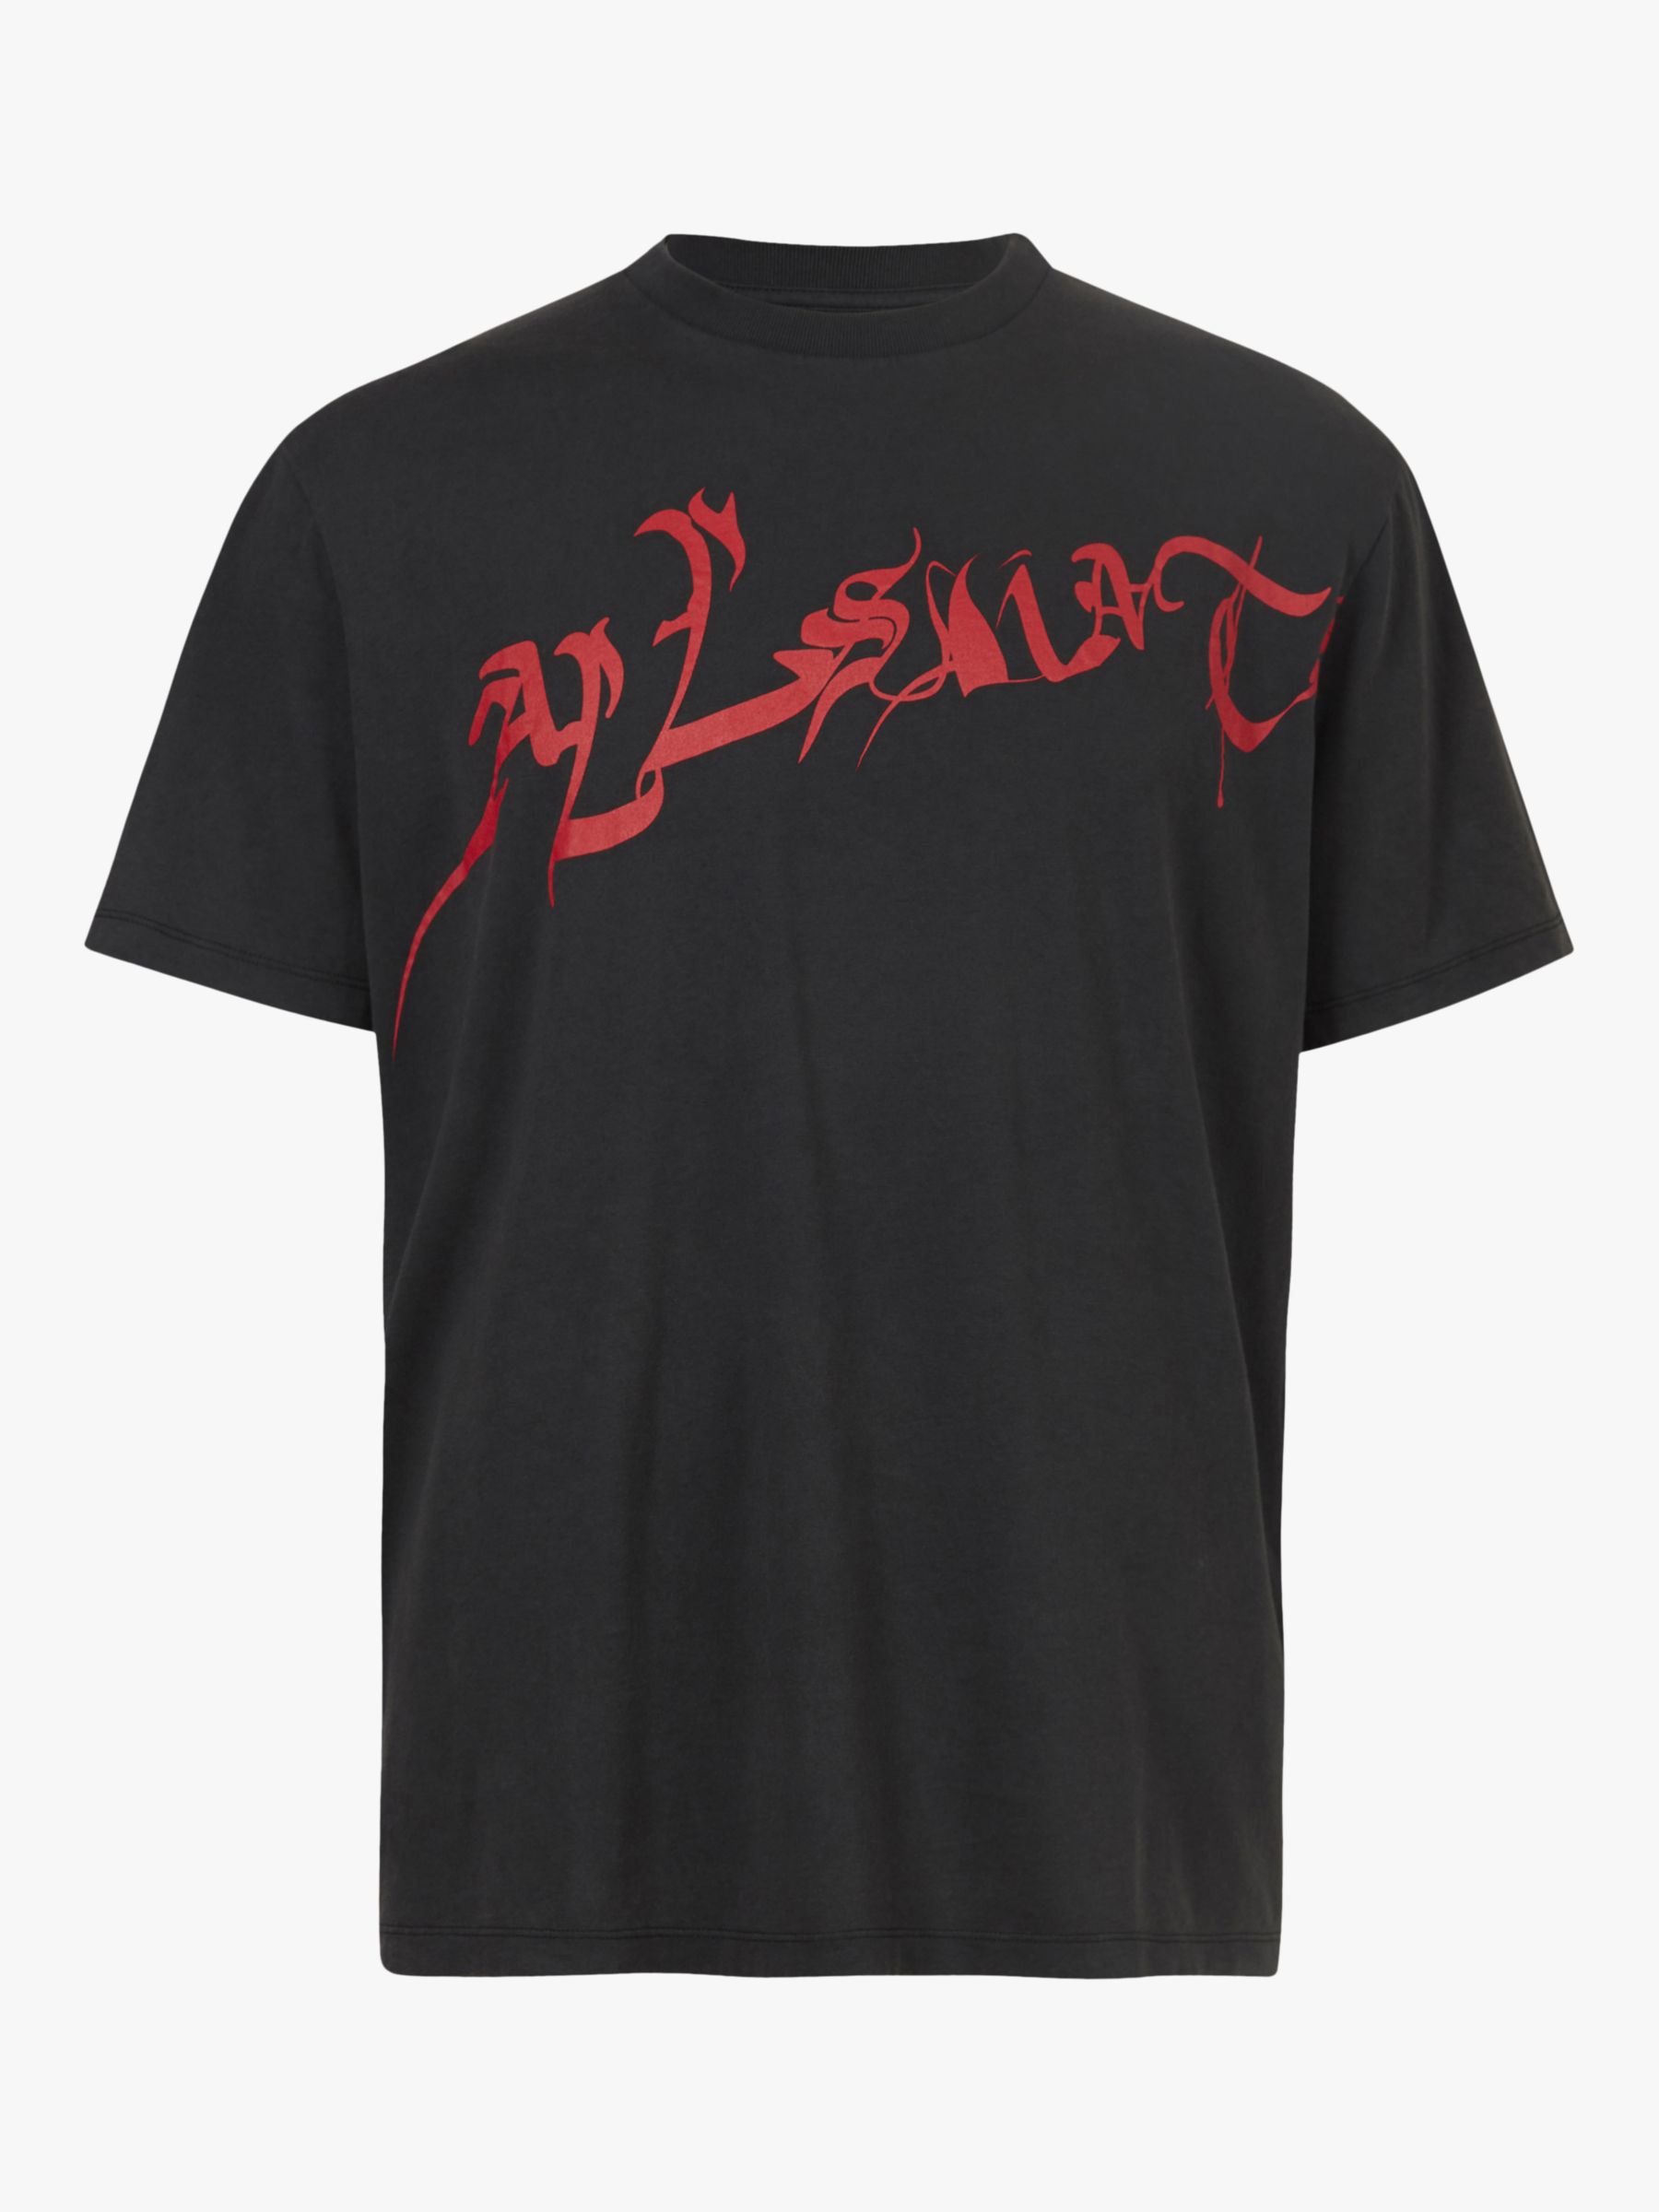 AllSaints Sliver T-Shirt, Washed Black